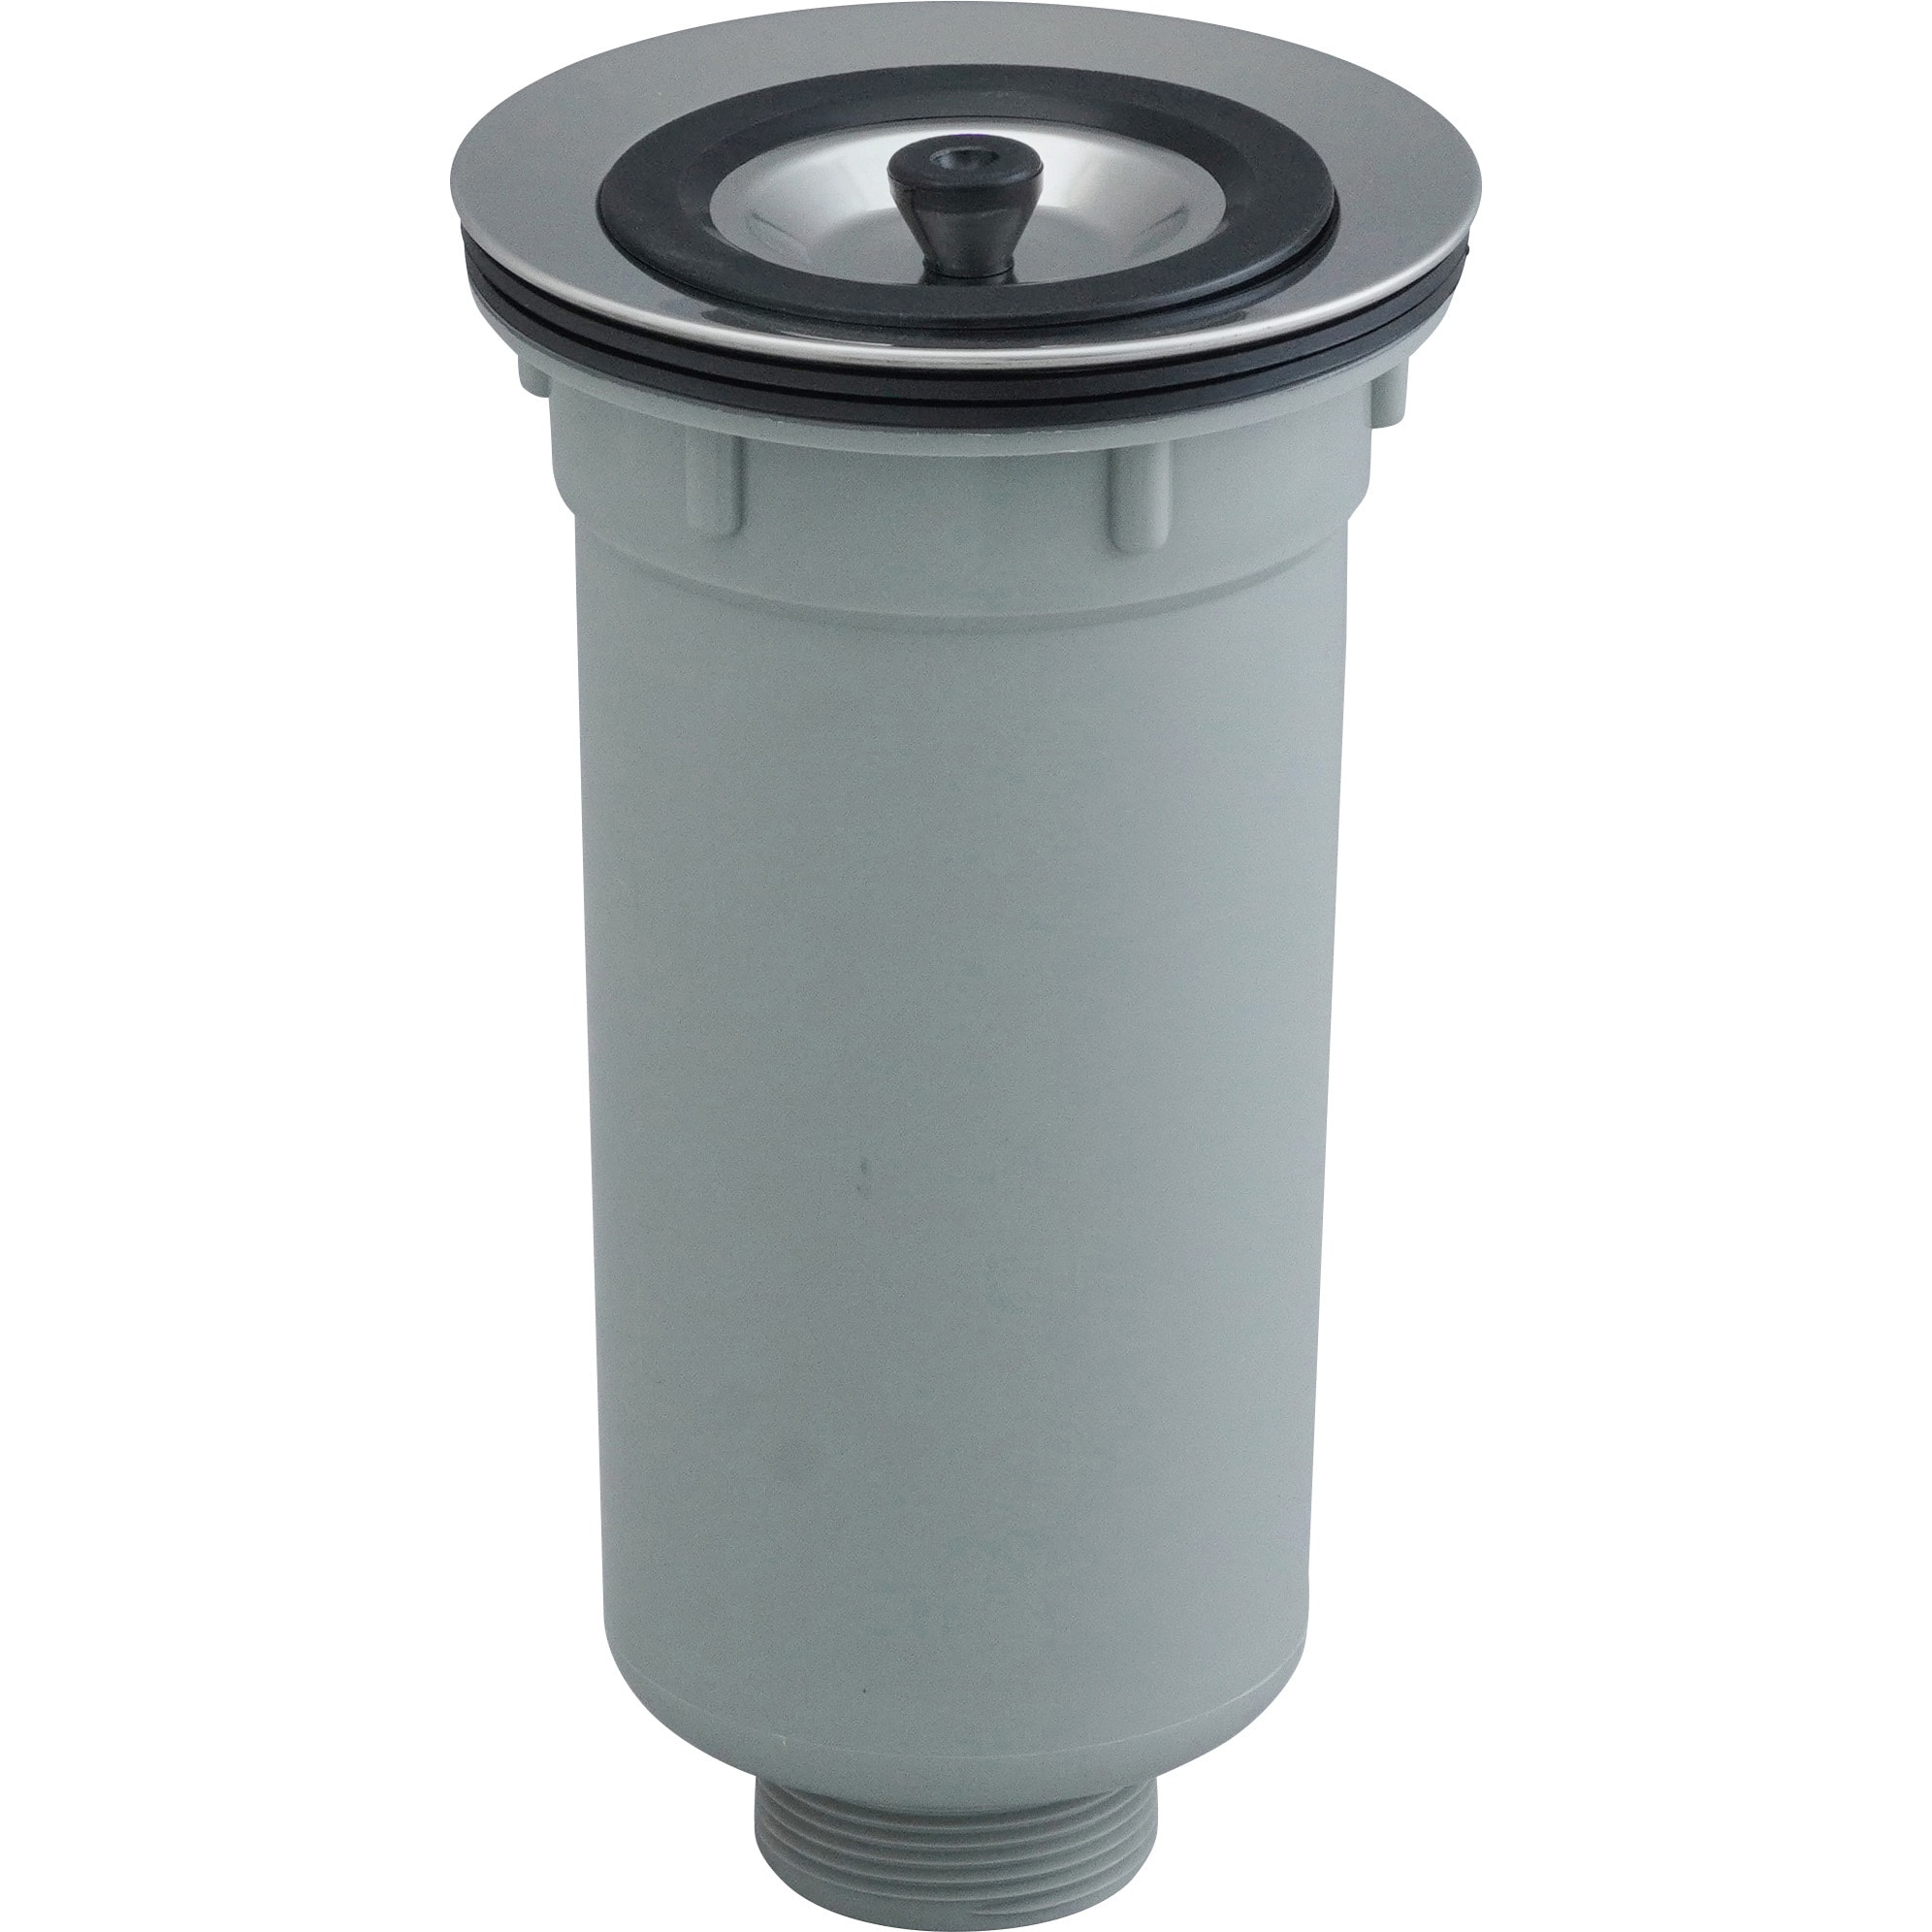 TO-298AP 樹脂製小型ゴミ収納器付防臭排水トラップ(40A) 1個 SUGICO